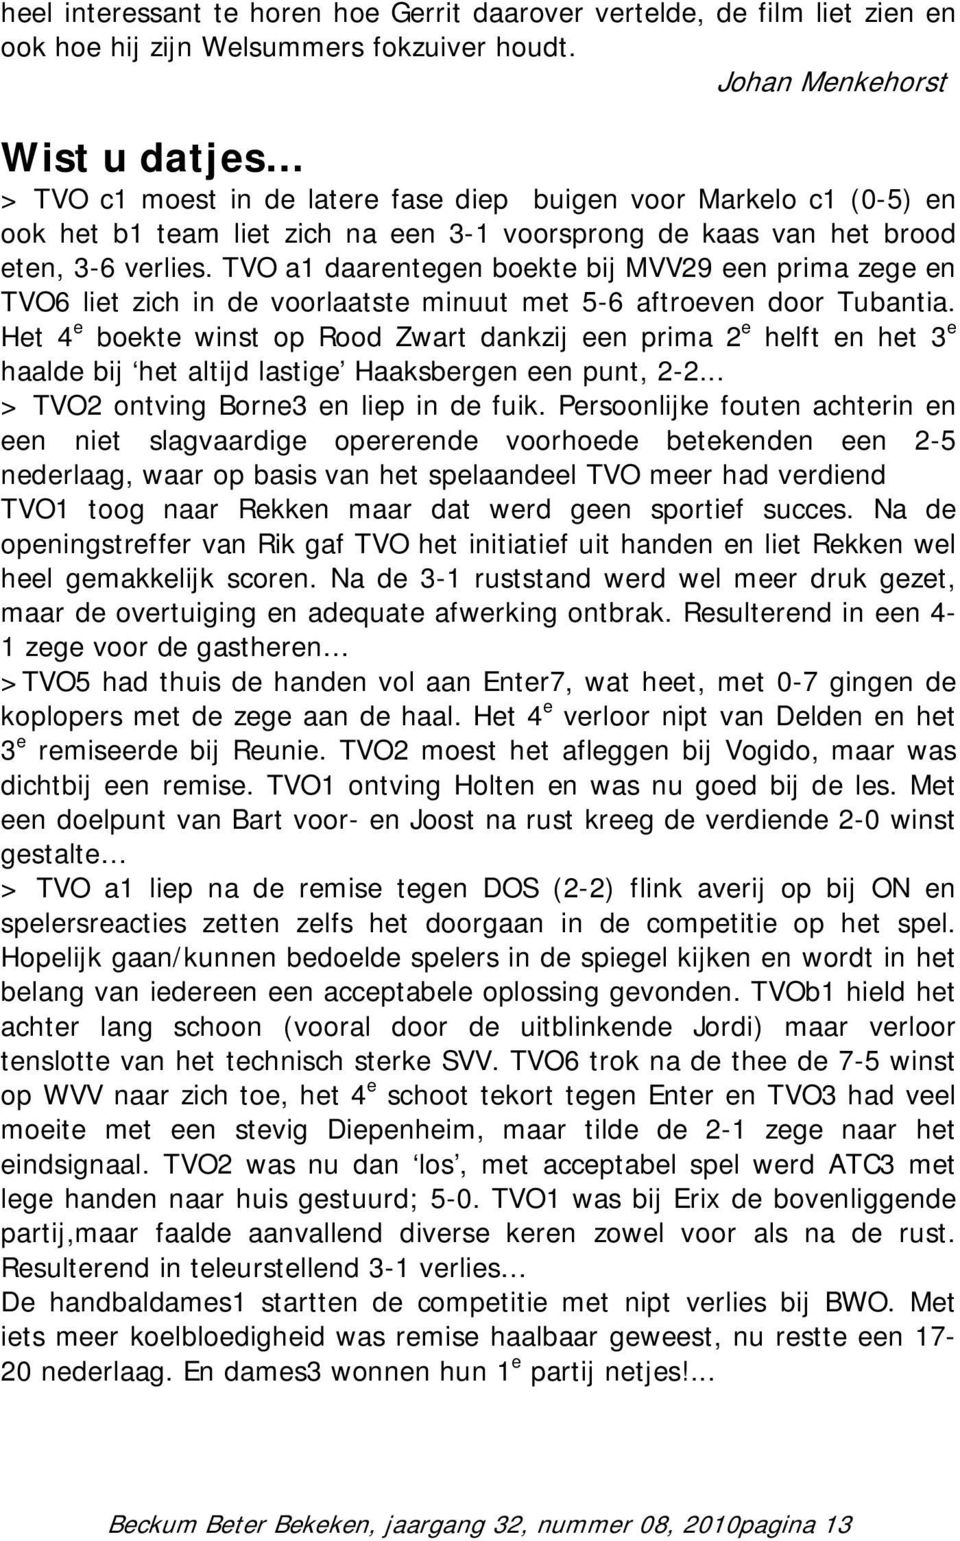 TVO a1 daarentegen boekte bij MVV29 een prima zege en TVO6 liet zich in de voorlaatste minuut met 5-6 aftroeven door Tubantia.